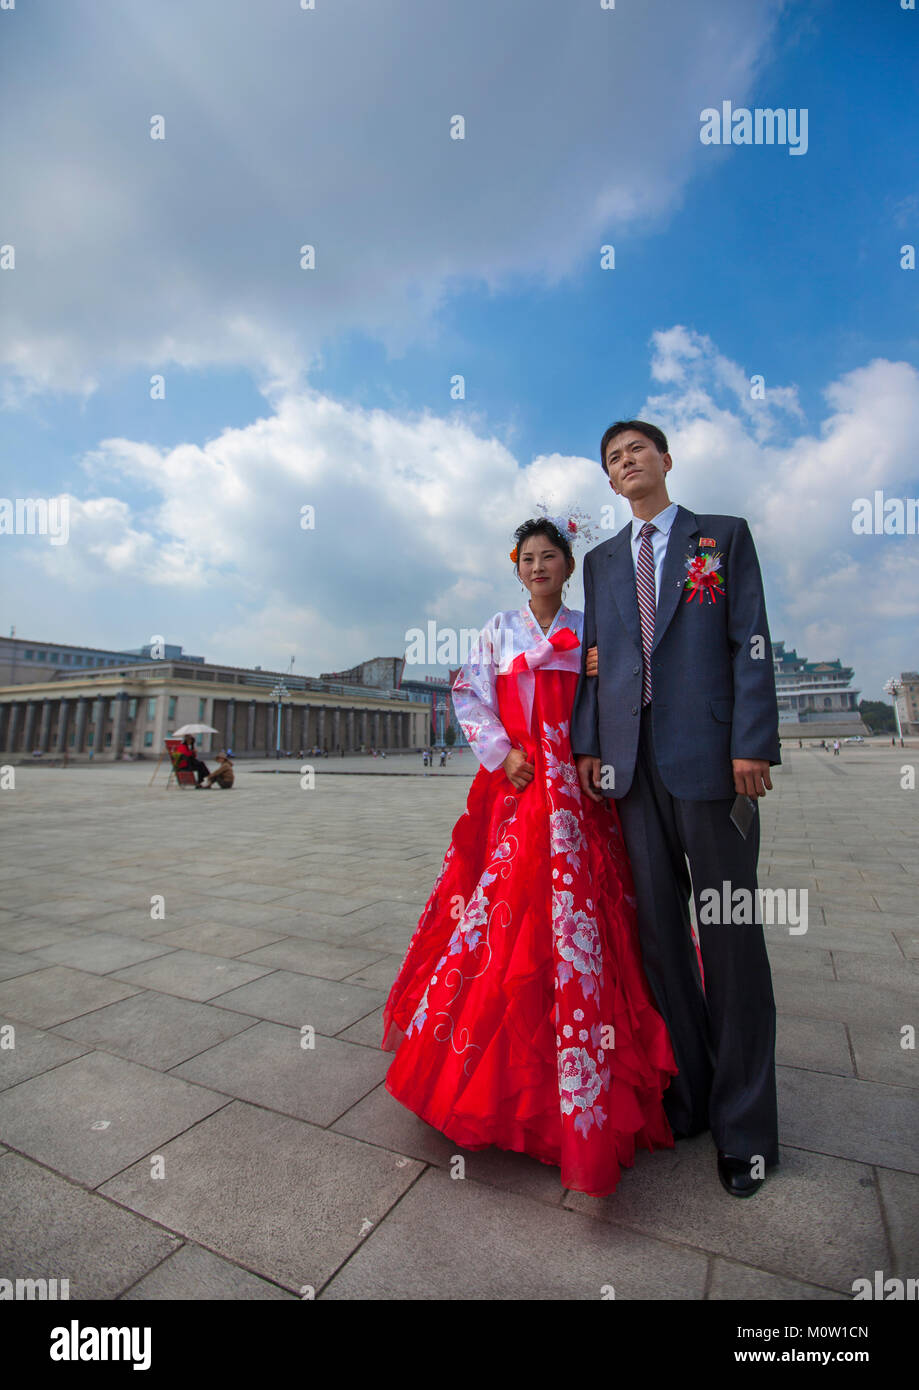 Nord coreano coppia appena sposata in Kim il Sung square, Provincia di Pyongan, Pyongyang, Corea del Nord Foto Stock